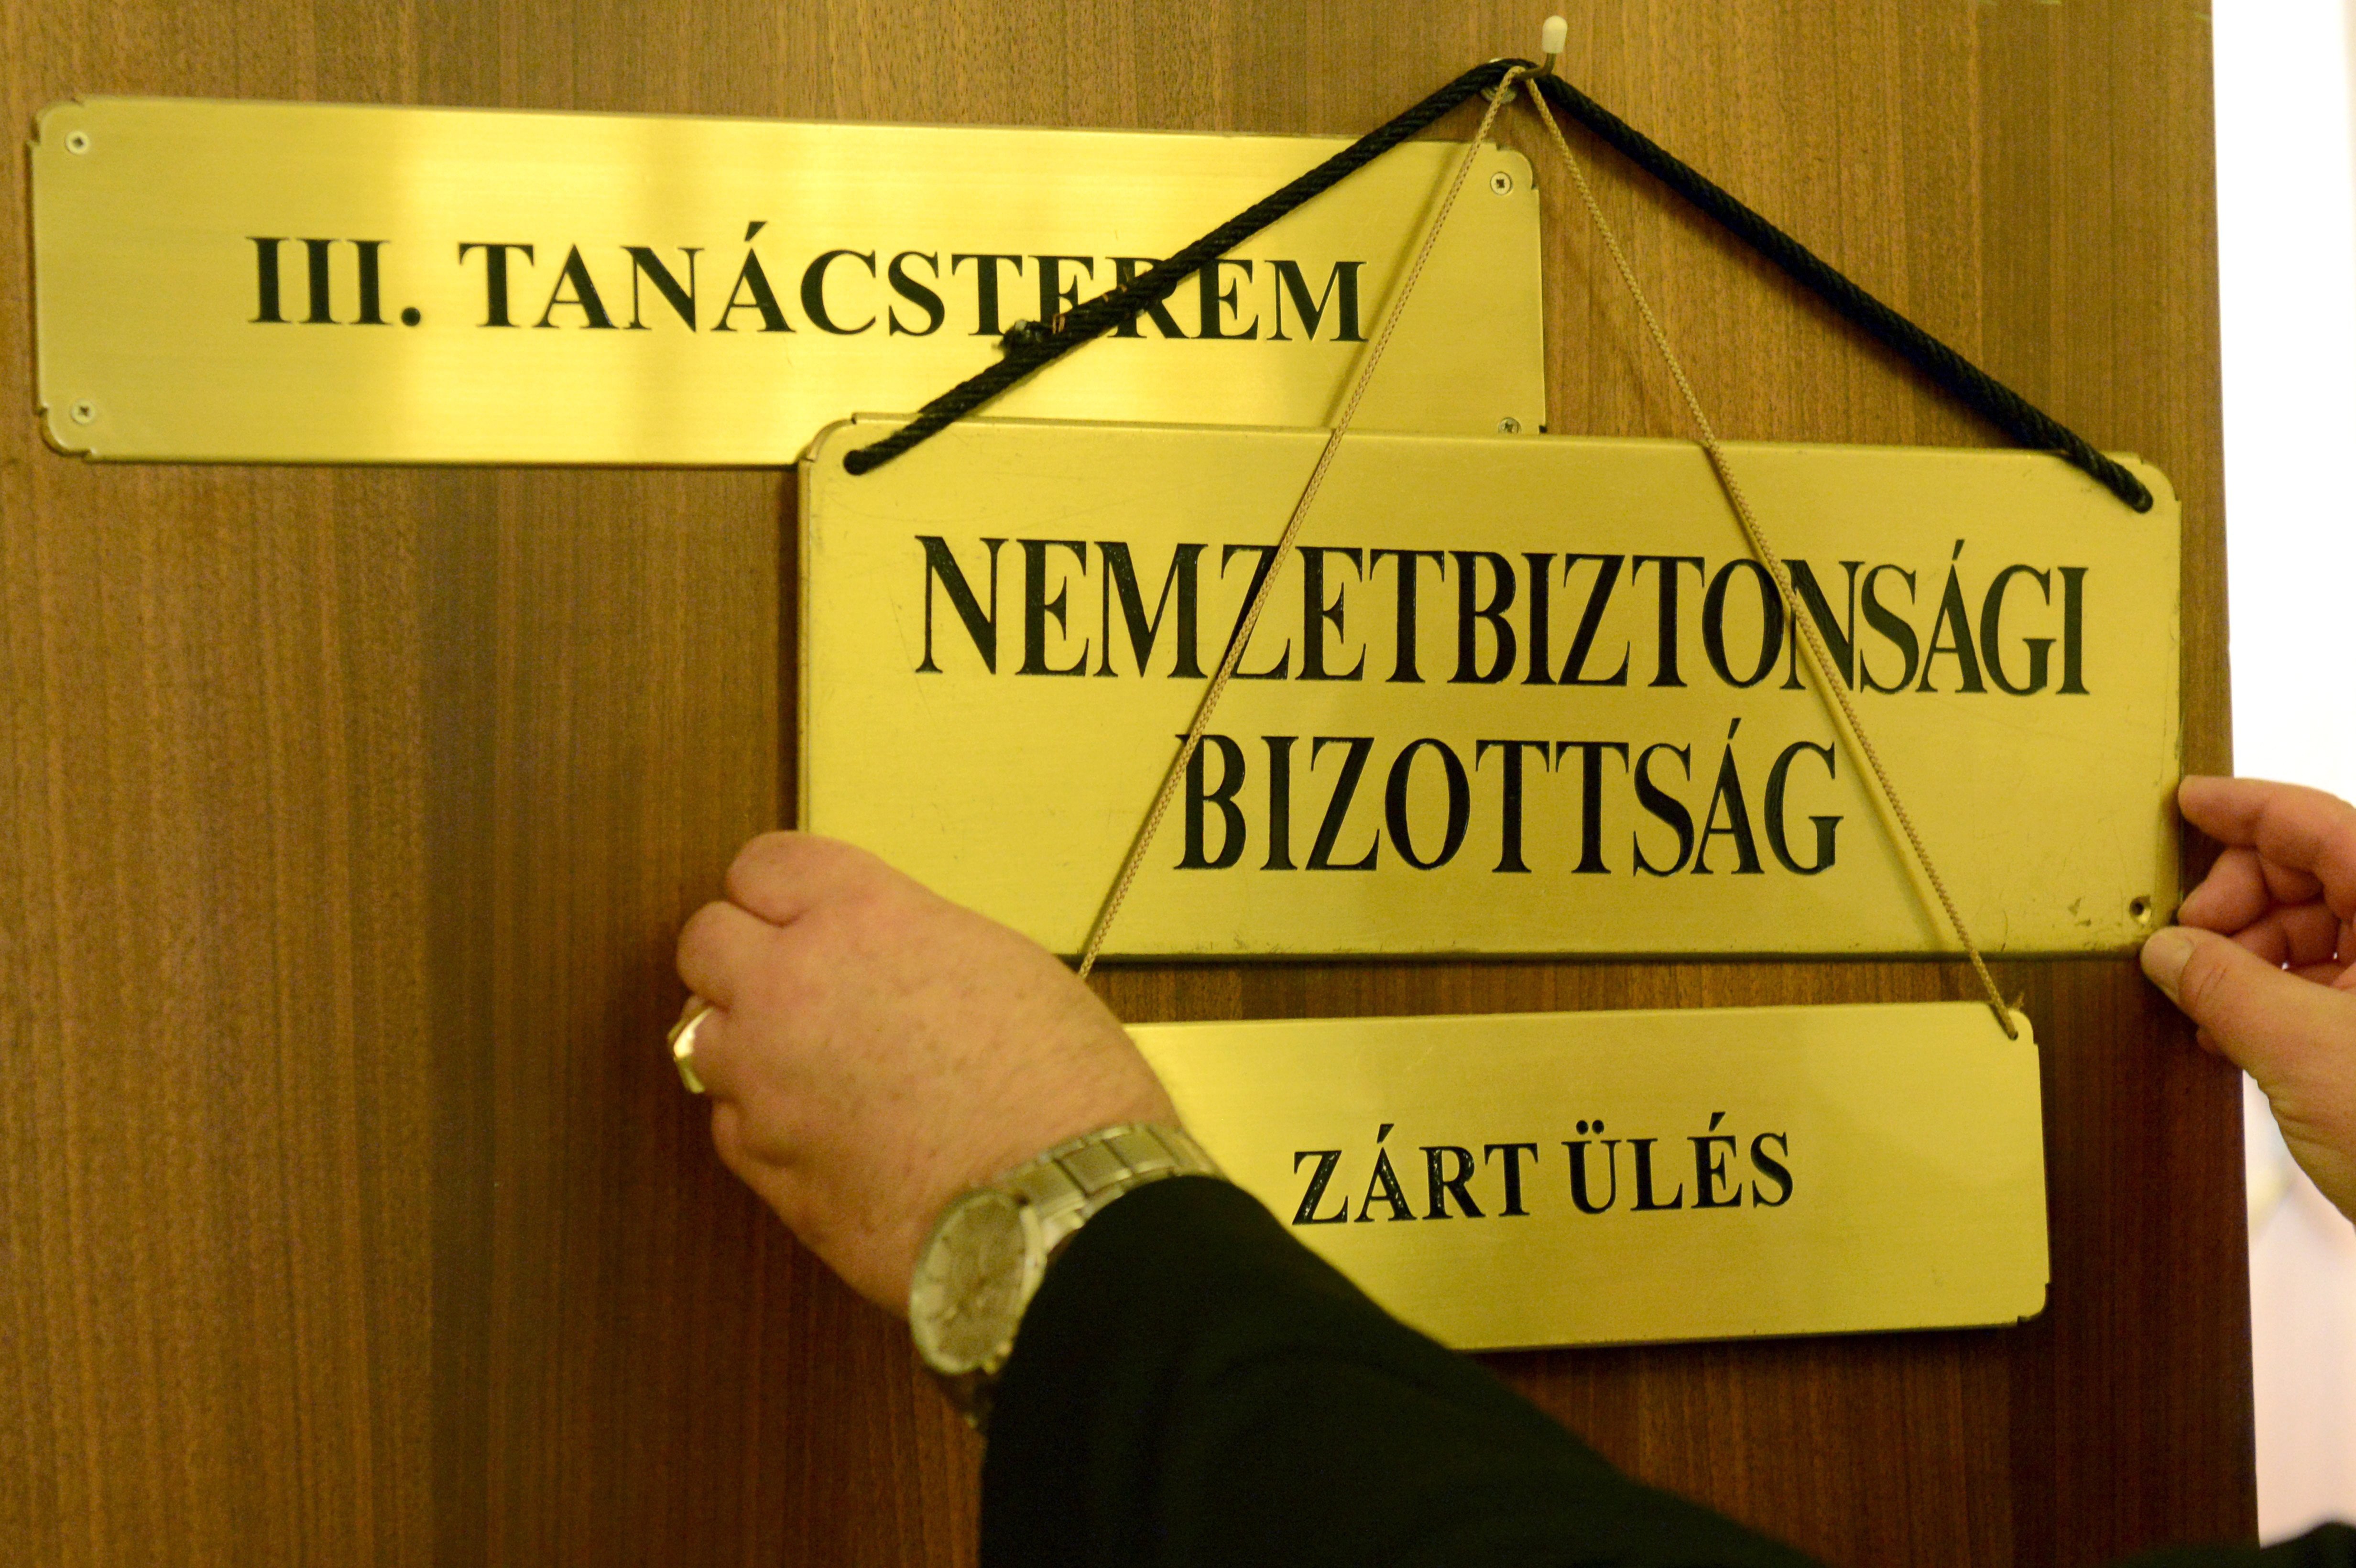 Zárt ülést jelző felirat az Országgyűlés nemzetbiztonsági bizottságának ülése előtt, amelyen meghallgatták Lázár János akkori Miniszterelnökséget vezető minisztert a Képviselői Irodaházban 2016. június 6-án.